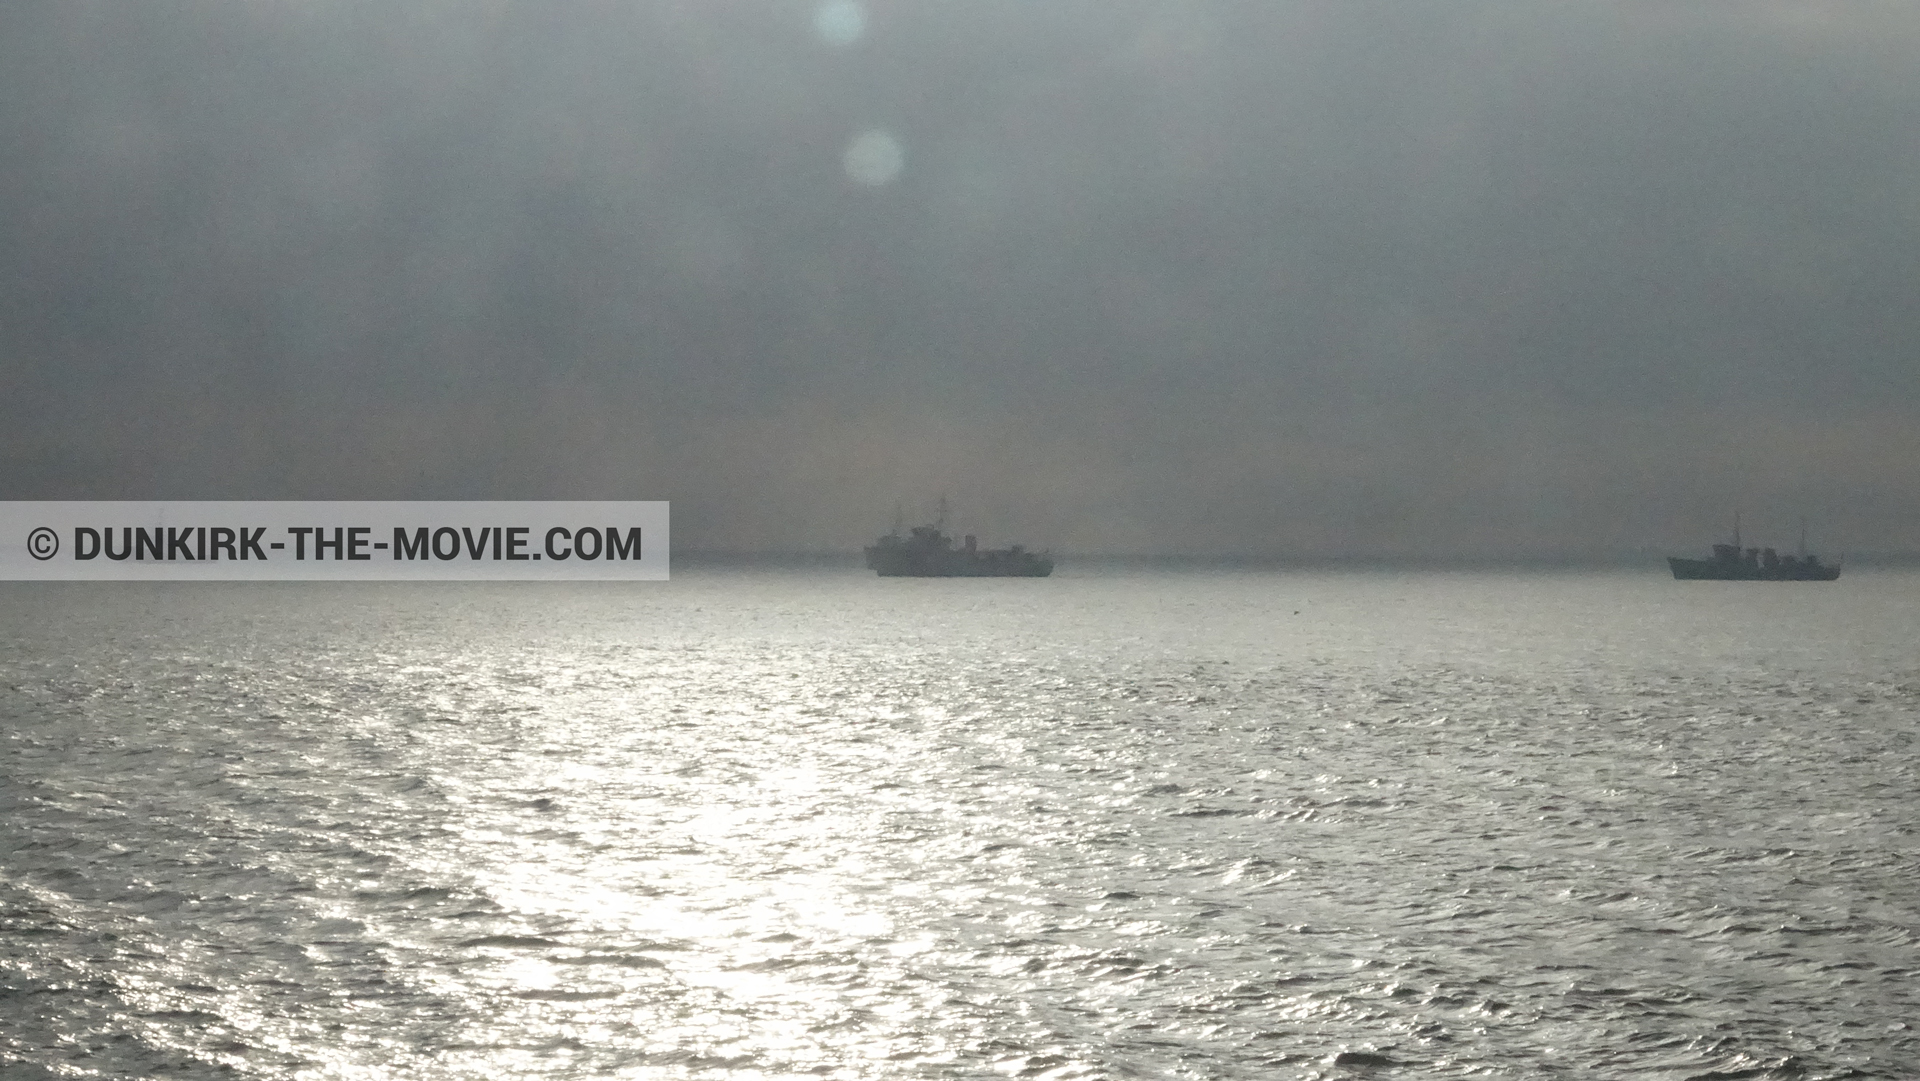 Fotos con barco, cielo nublado,  durante el rodaje de la película Dunkerque de Nolan